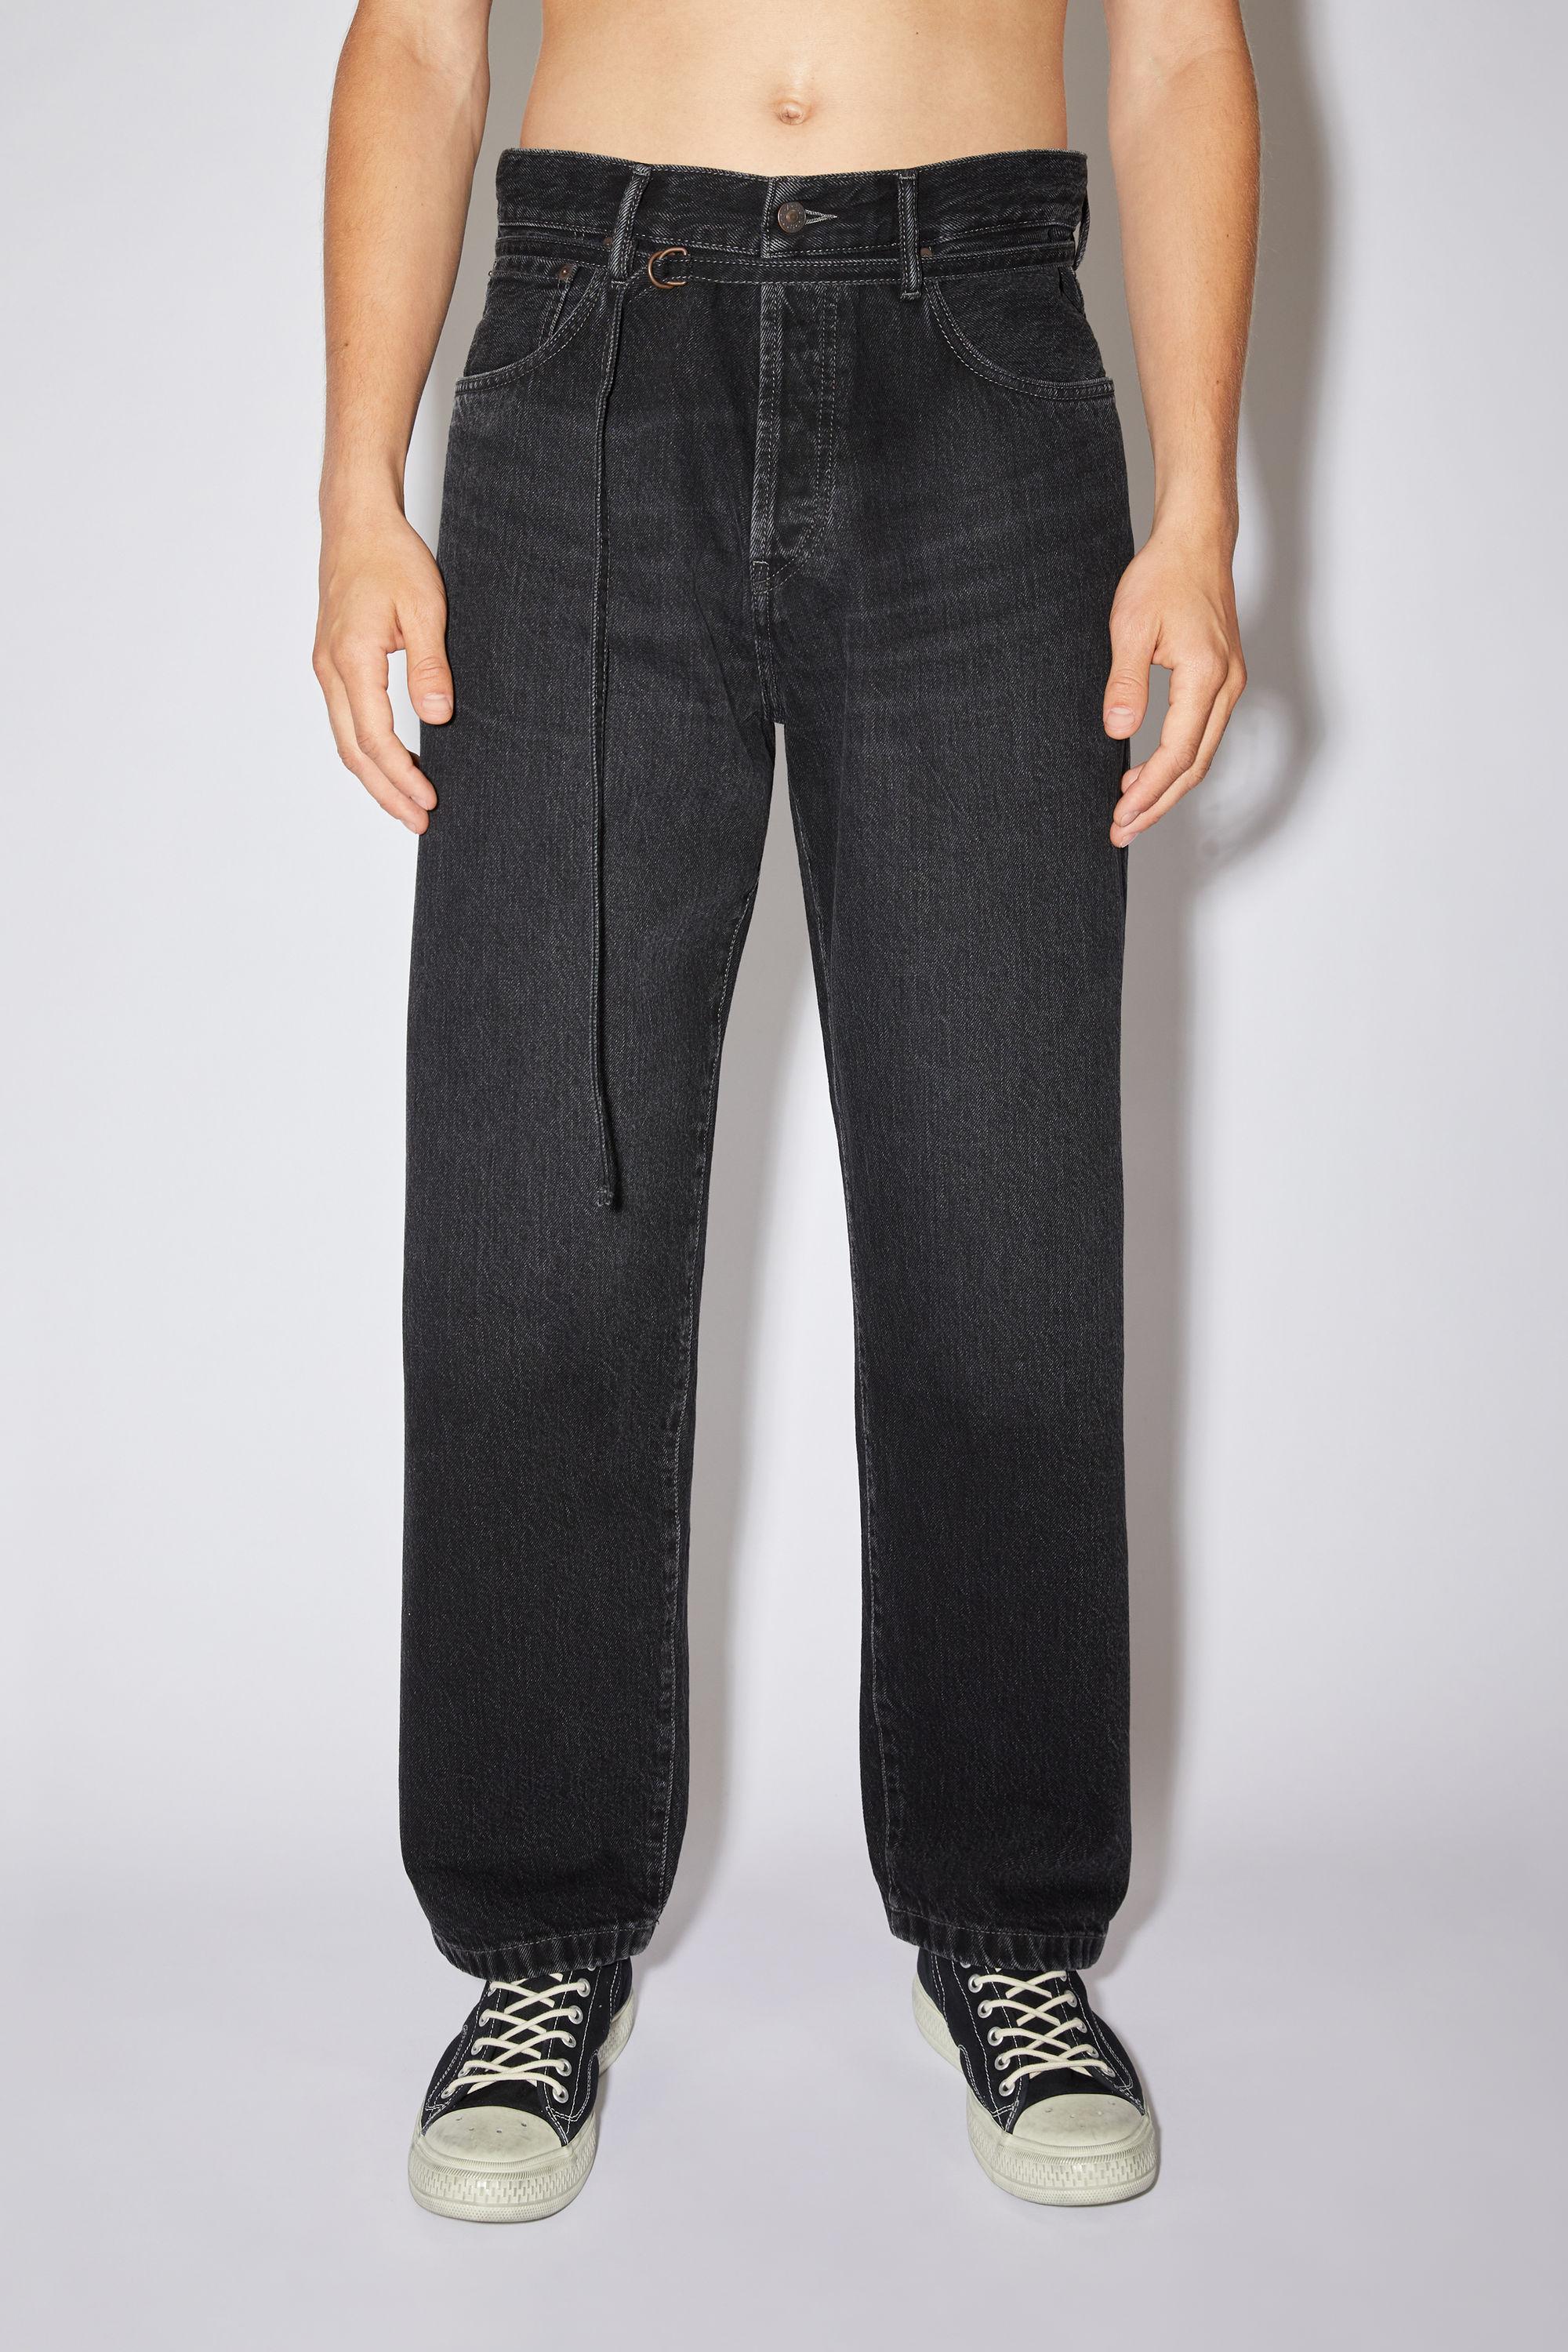 Acne Studios 1991 Toj Vintage Loose Fit Jeans in Black | Lyst